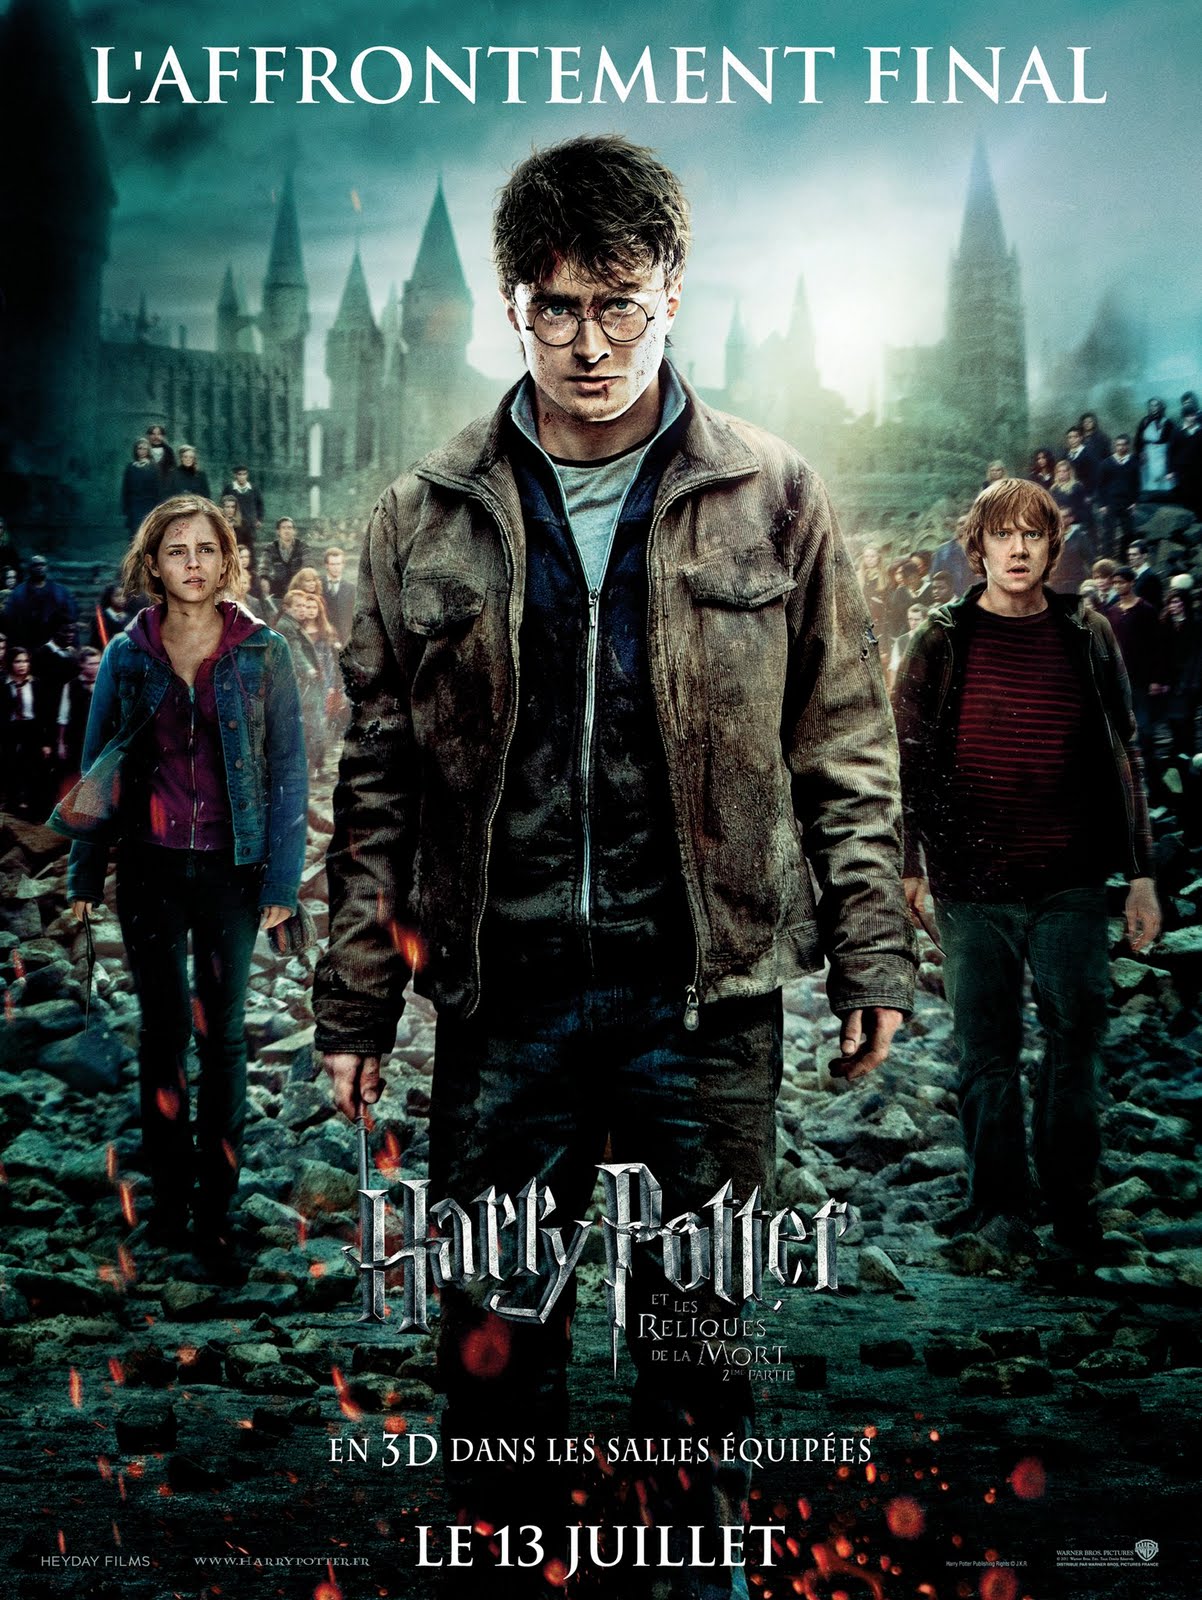 http://3.bp.blogspot.com/-W_5IbvtG99I/TgIf3t7w2AI/AAAAAAAAAJI/NfoizabnZSs/s1600/Harry-Potter-7.2-Affiche-Finale-France.jpg